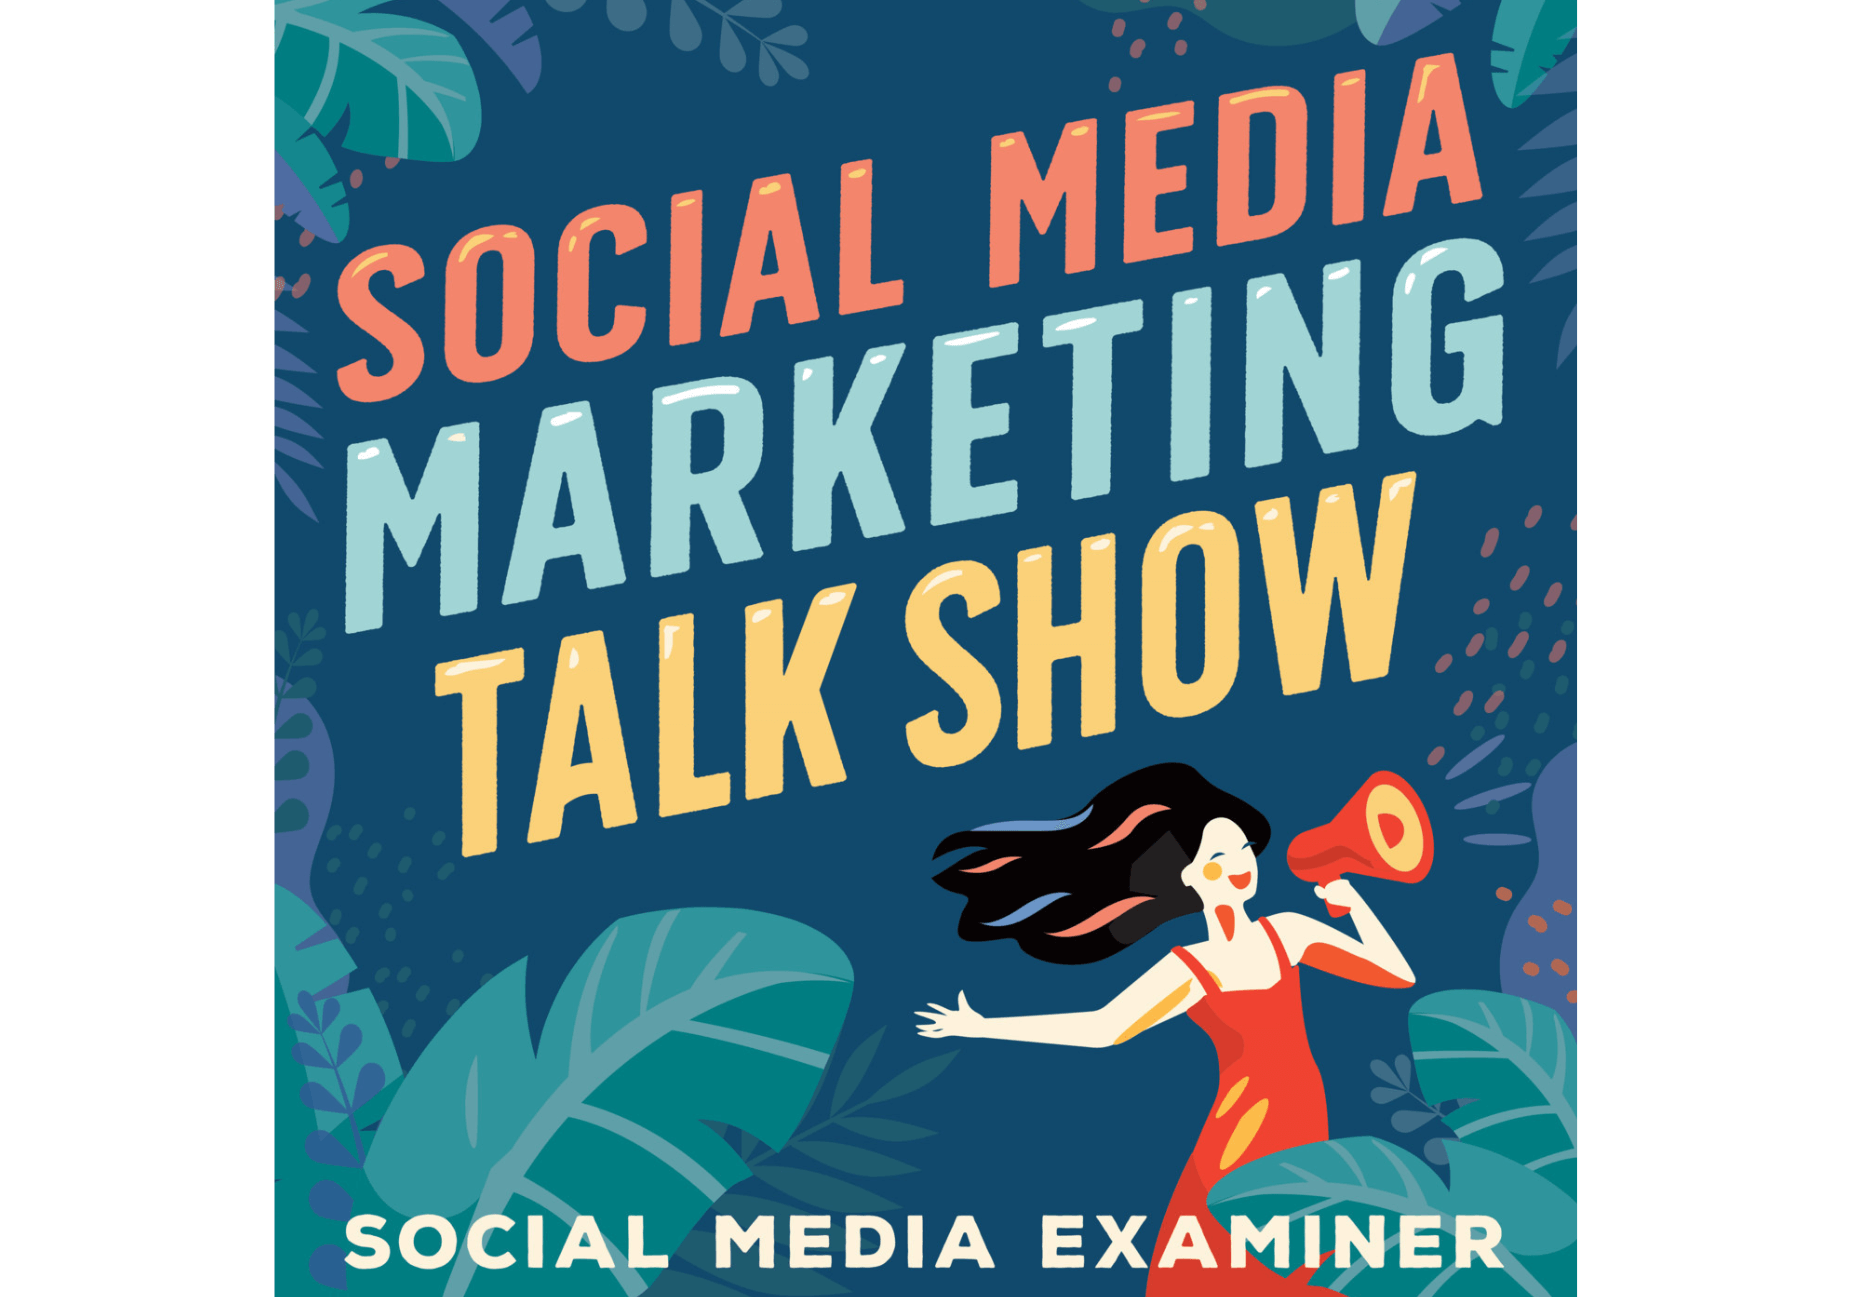 Social-Media-Marketing-Talk-Show-banner